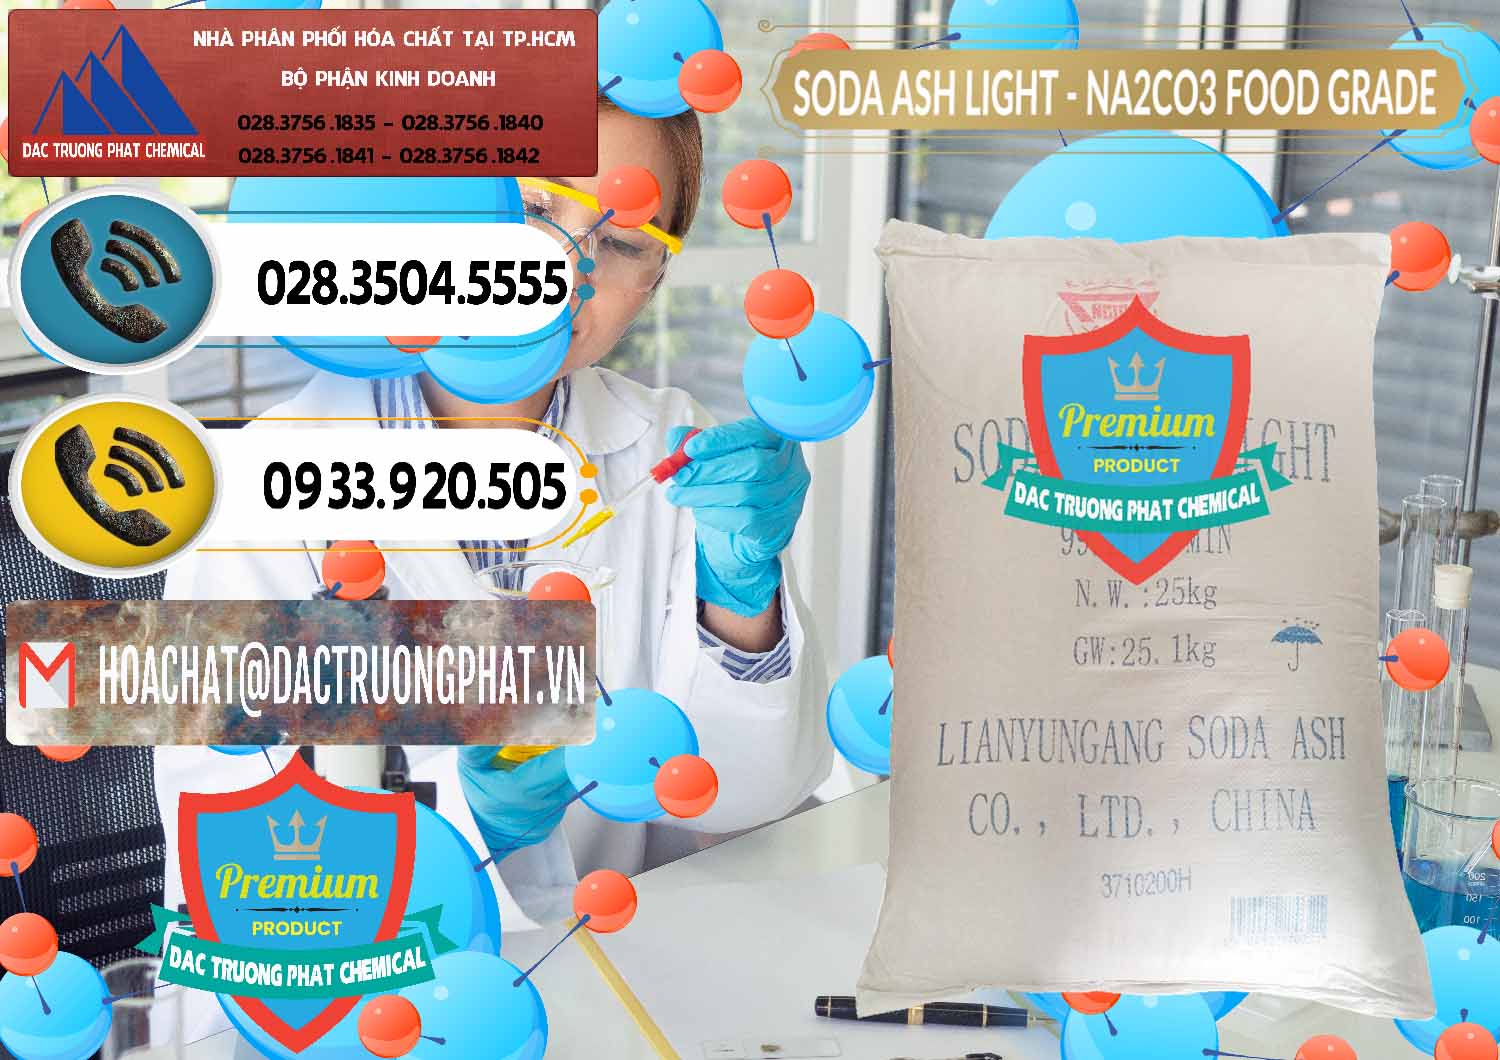 Công ty chuyên nhập khẩu ( bán ) Soda Ash Light – NA2CO3 Food Grade Trung Quốc China - 0127 - Cty phân phối _ nhập khẩu hóa chất tại TP.HCM - hoachatdetnhuom.vn